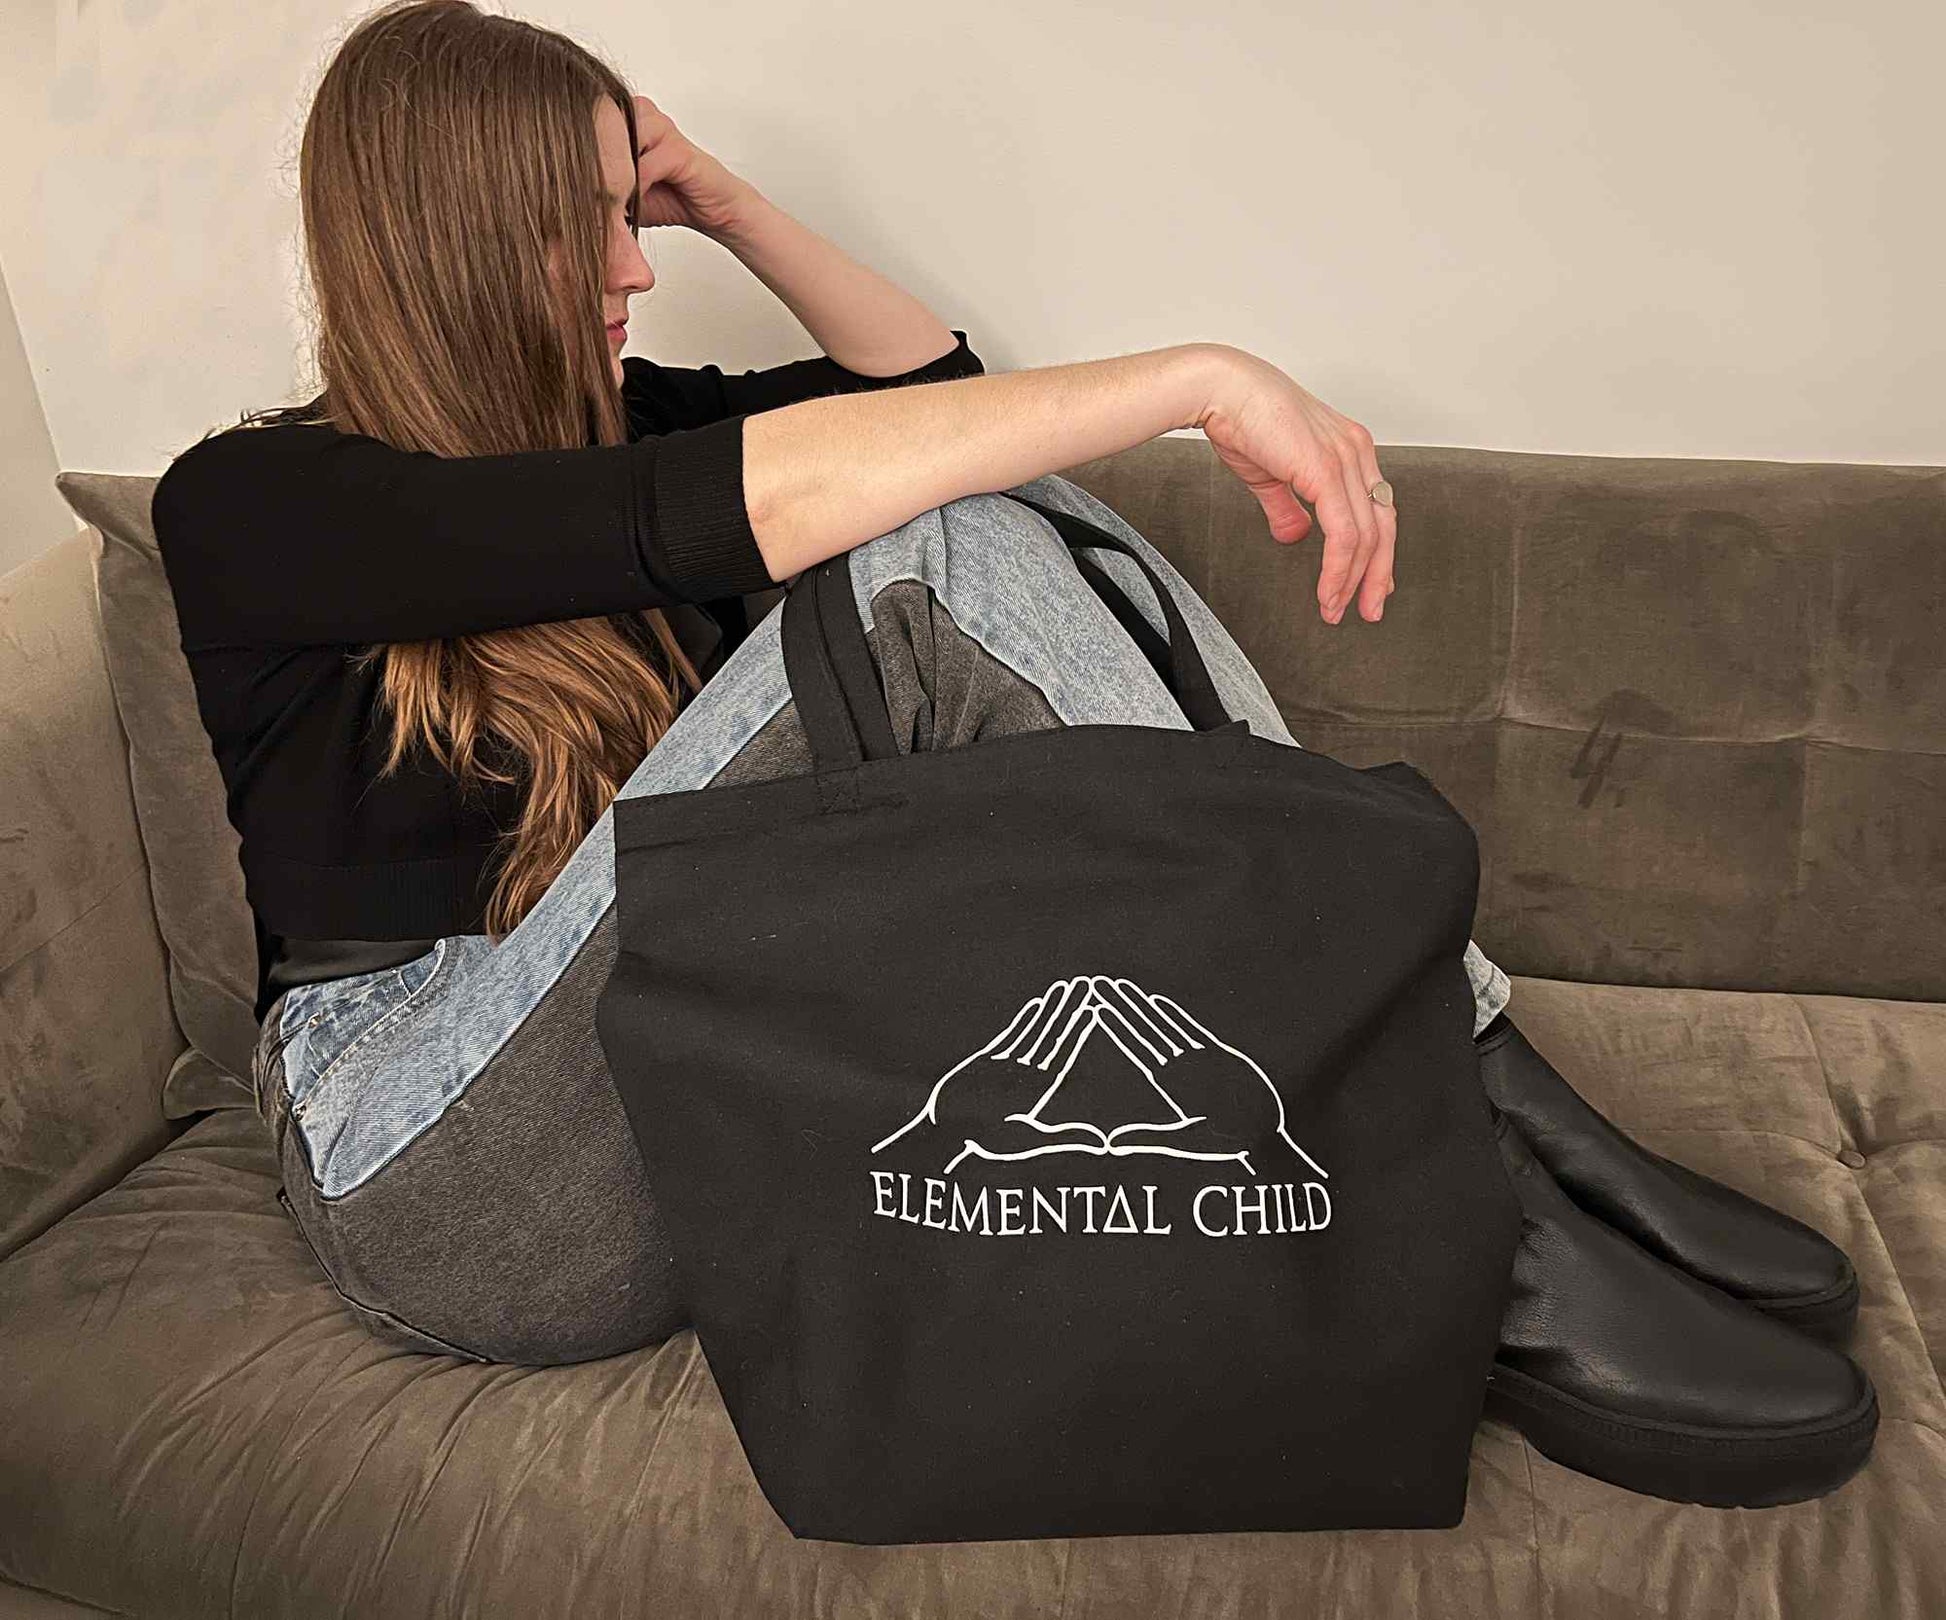 Elemental Child Crystal Crowns Elemental Child Tote Bag